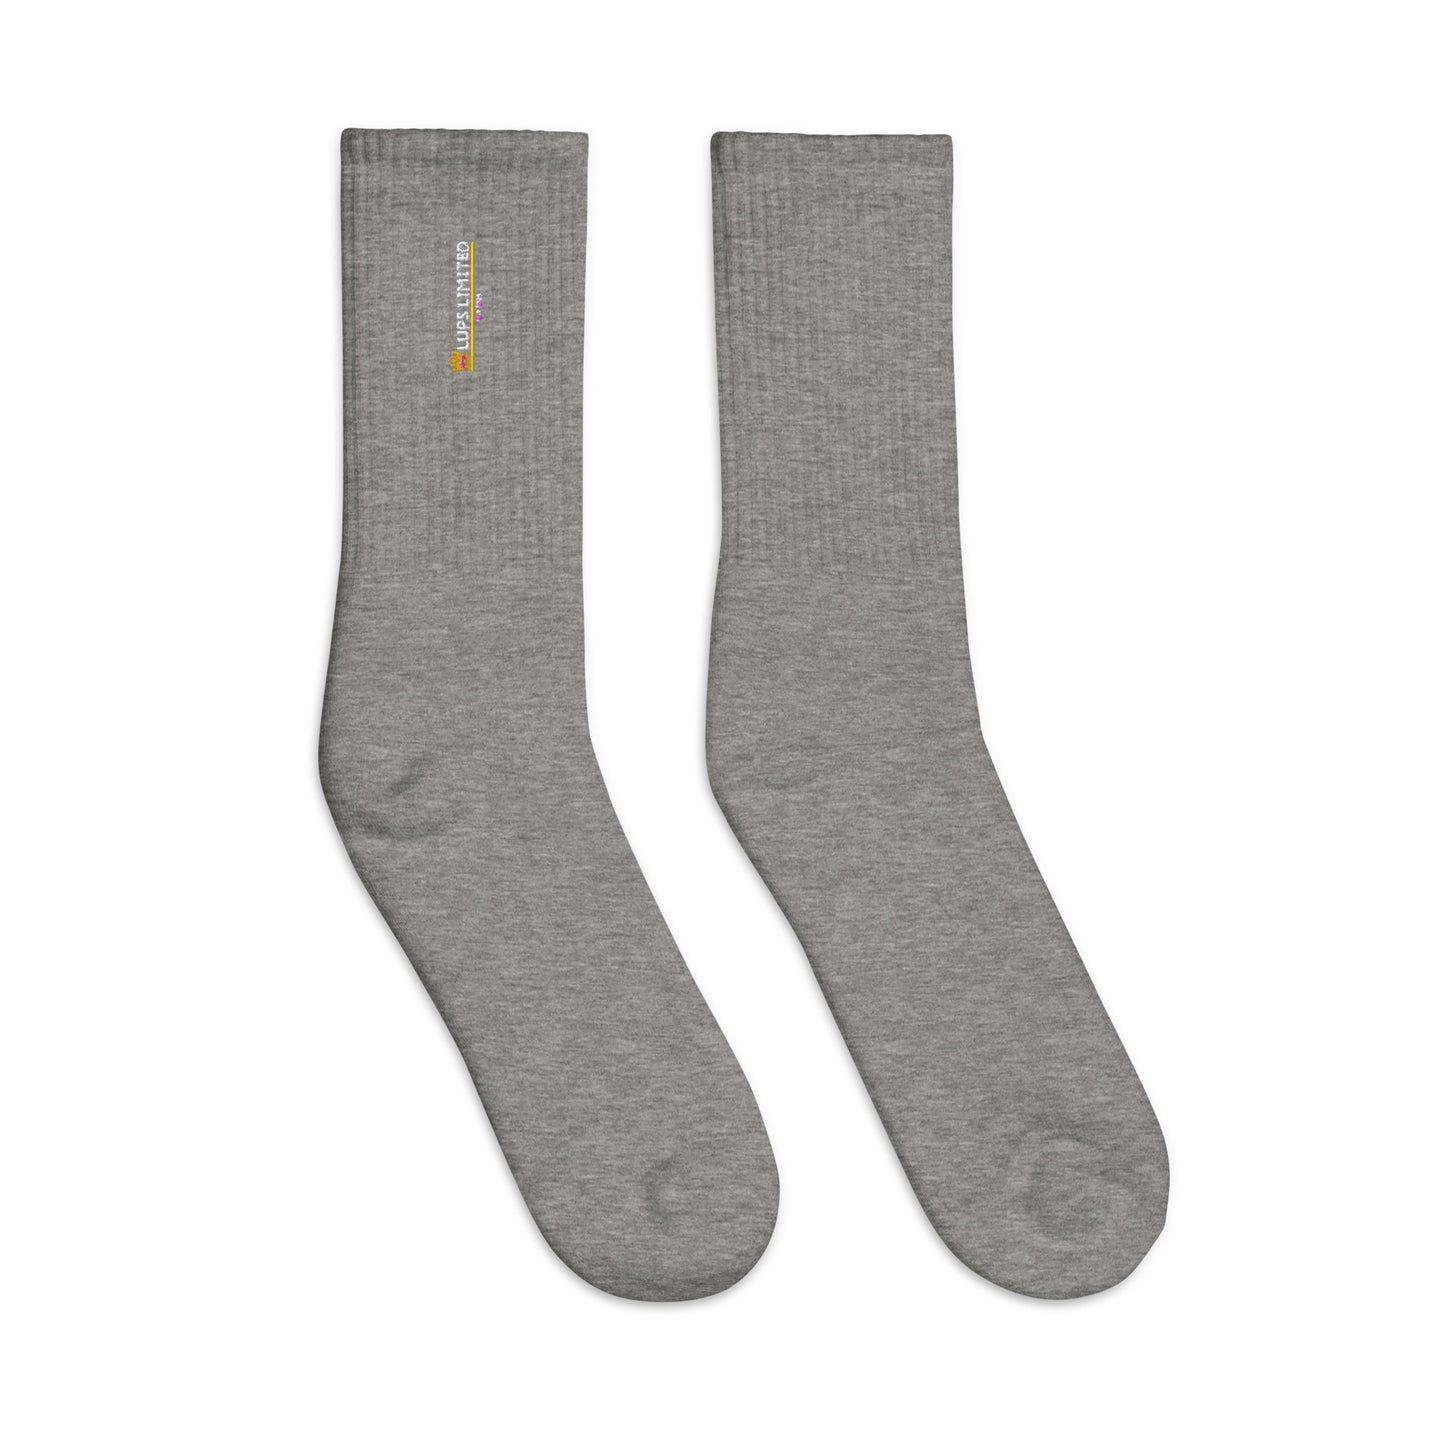 Lups Royal Socks